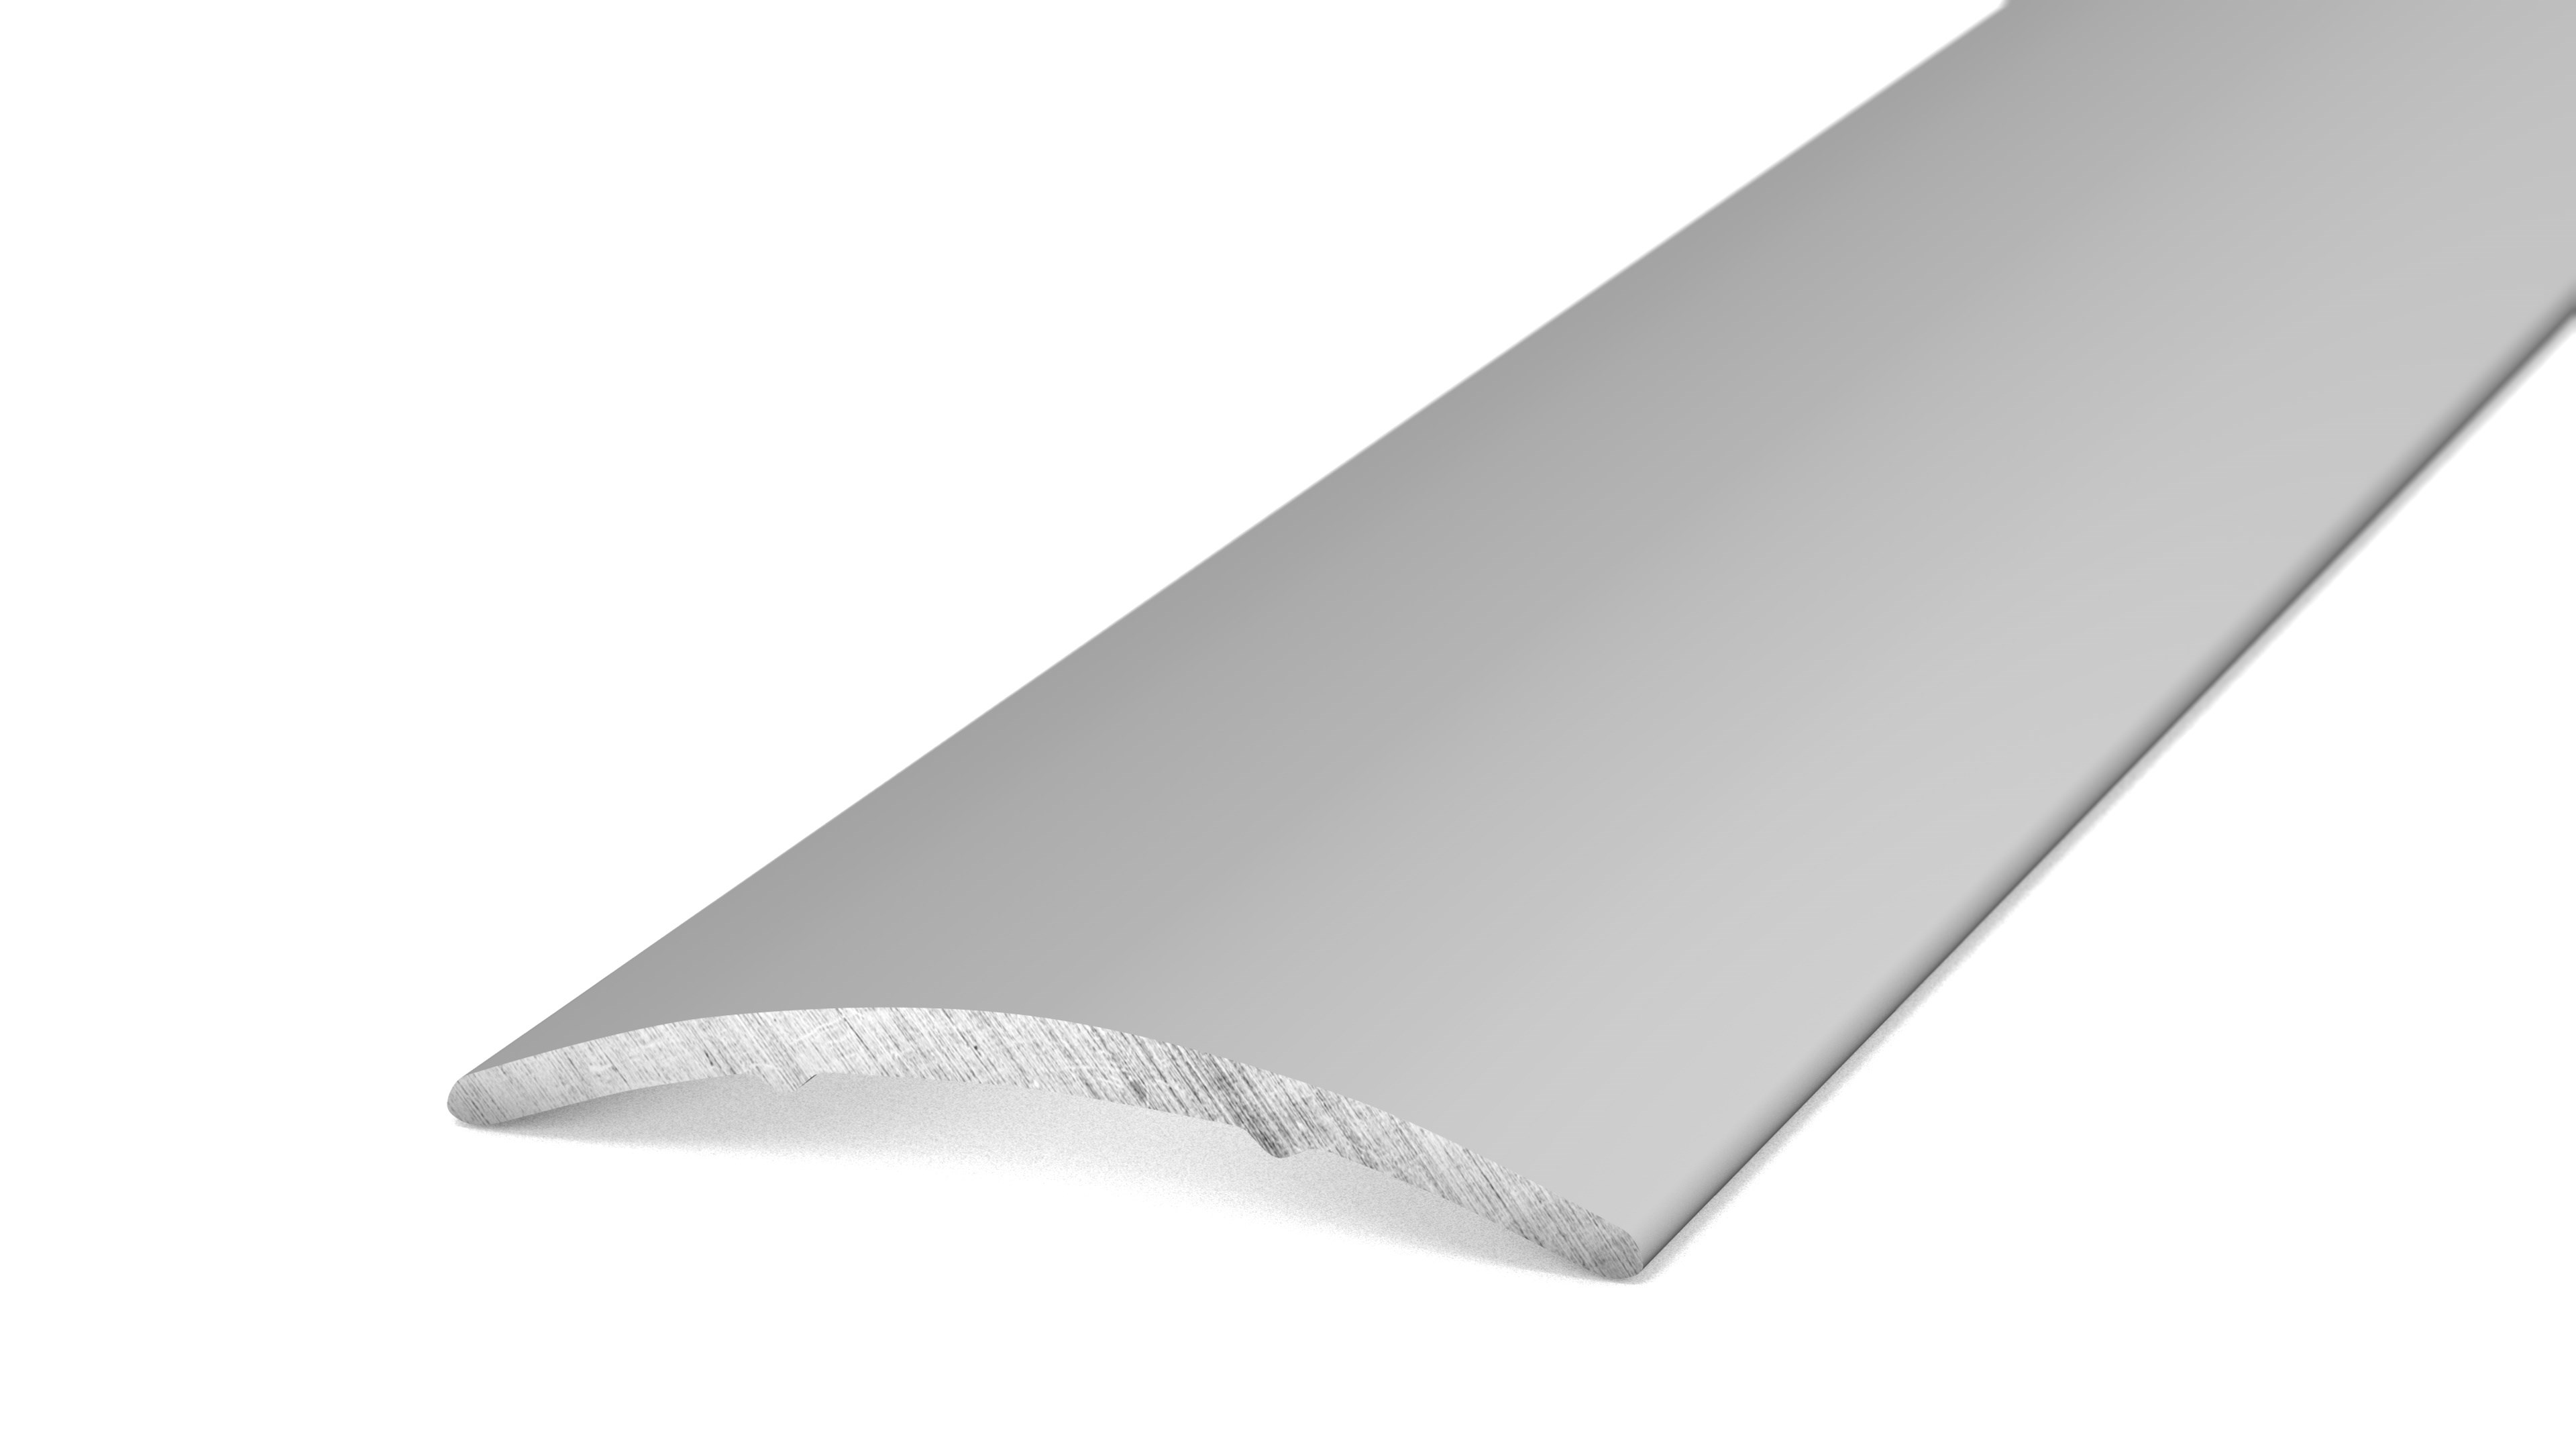 GedoTec Profil de transition auto-adhésif Aluminium SUPER PLAT Rail de transition Profil de sol Largeur 30 mm 3 Couleurs 100 cm ou 200 cm fabriqué en Allemagne 100cm Aluminium bronze anodisé 